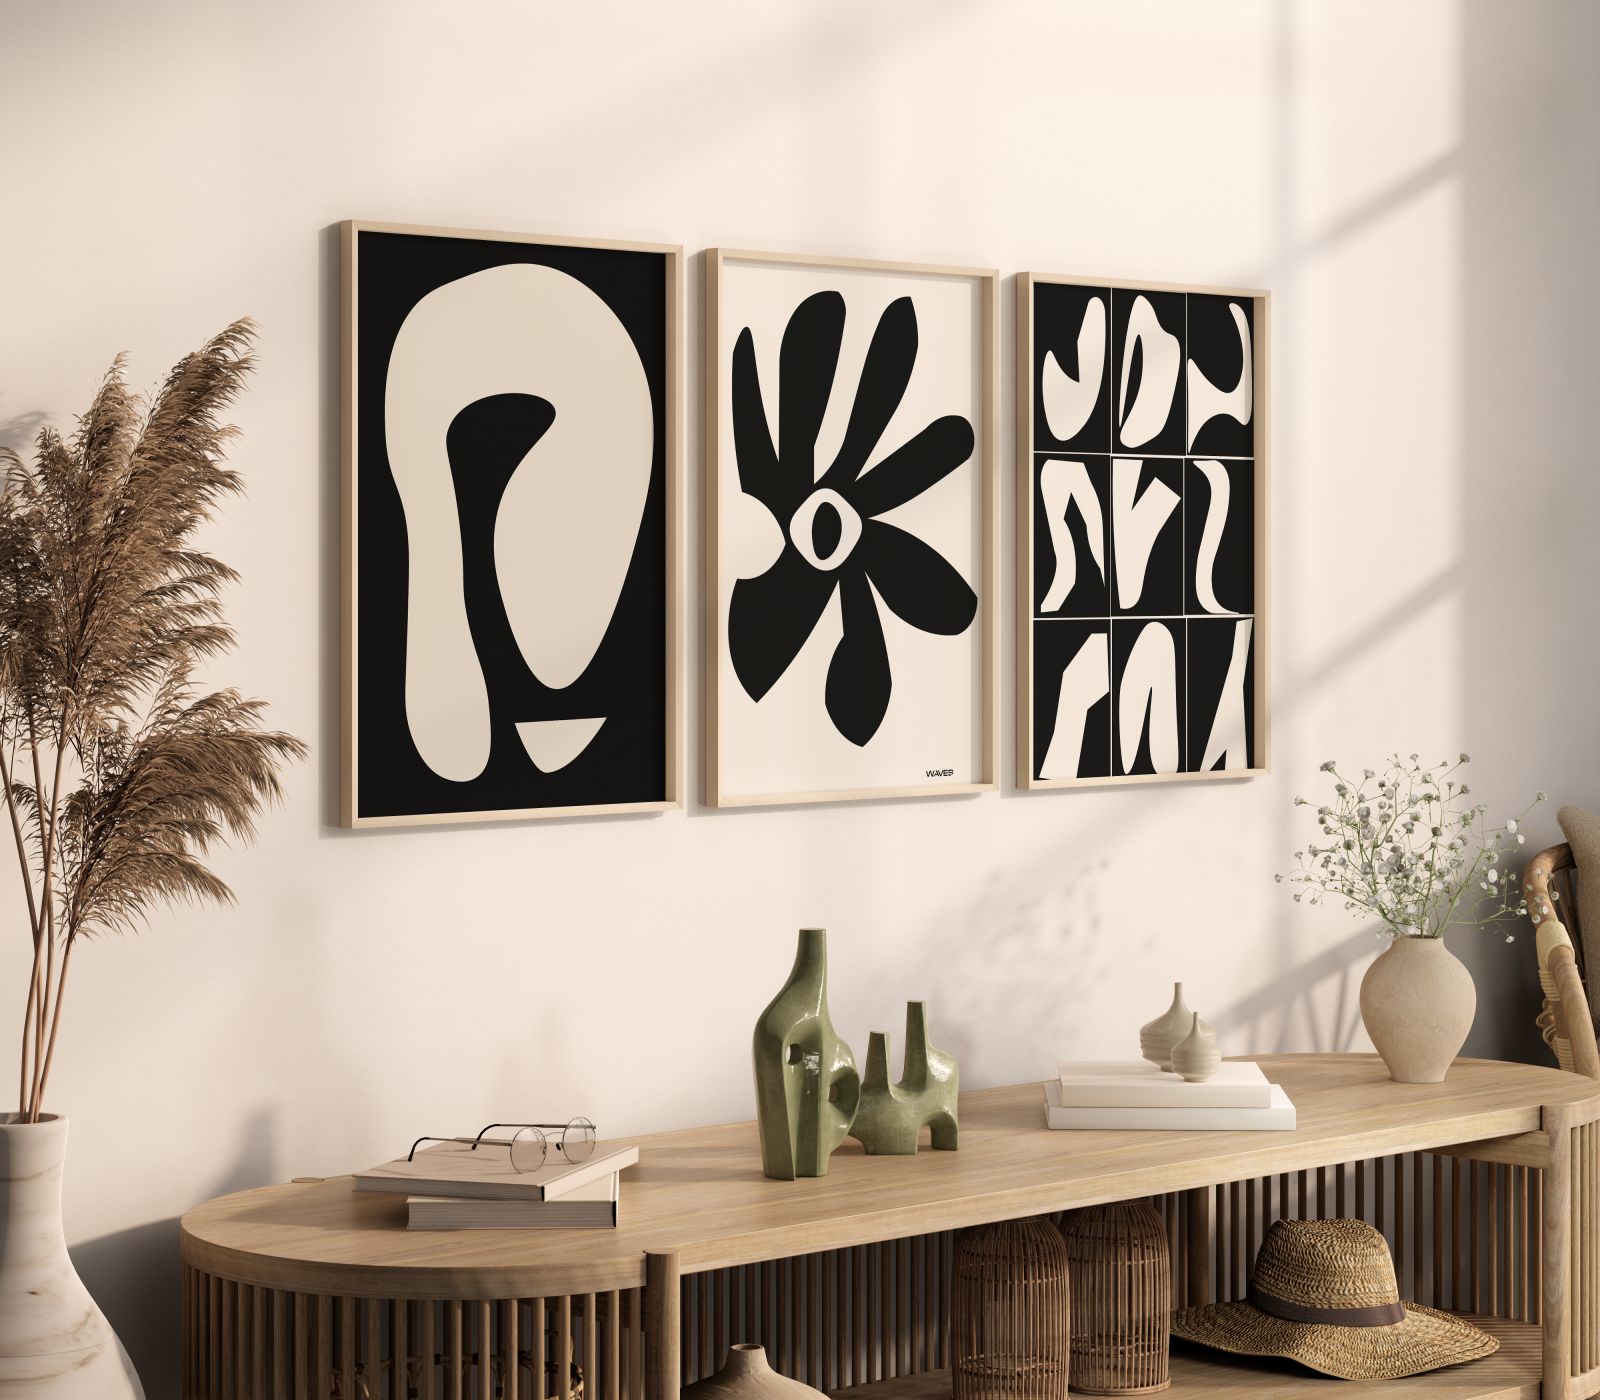 Plakaty w stylu Matisse marki WAVES WARSAW